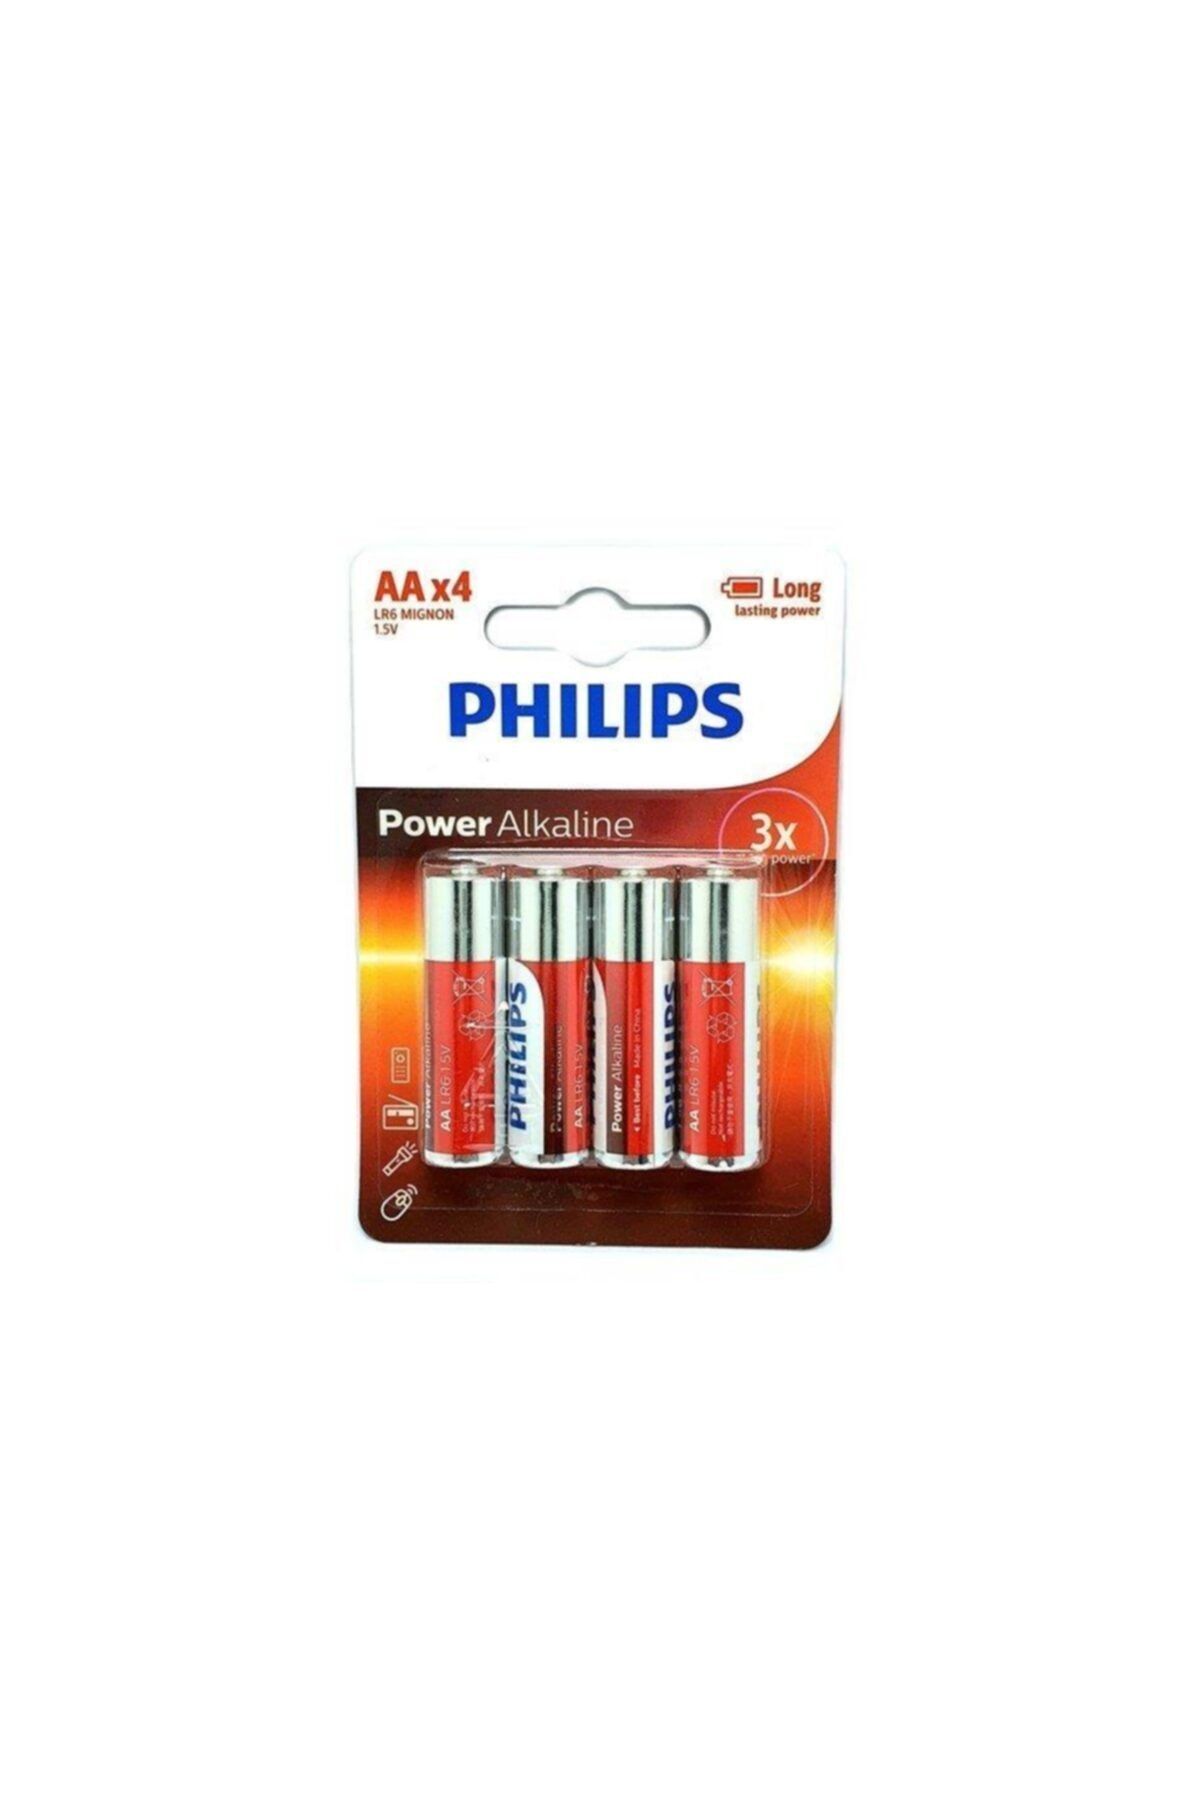 Philips Power Alkalin Kalem Pil 4xaa 1.5volt Kalem Pil Lr6